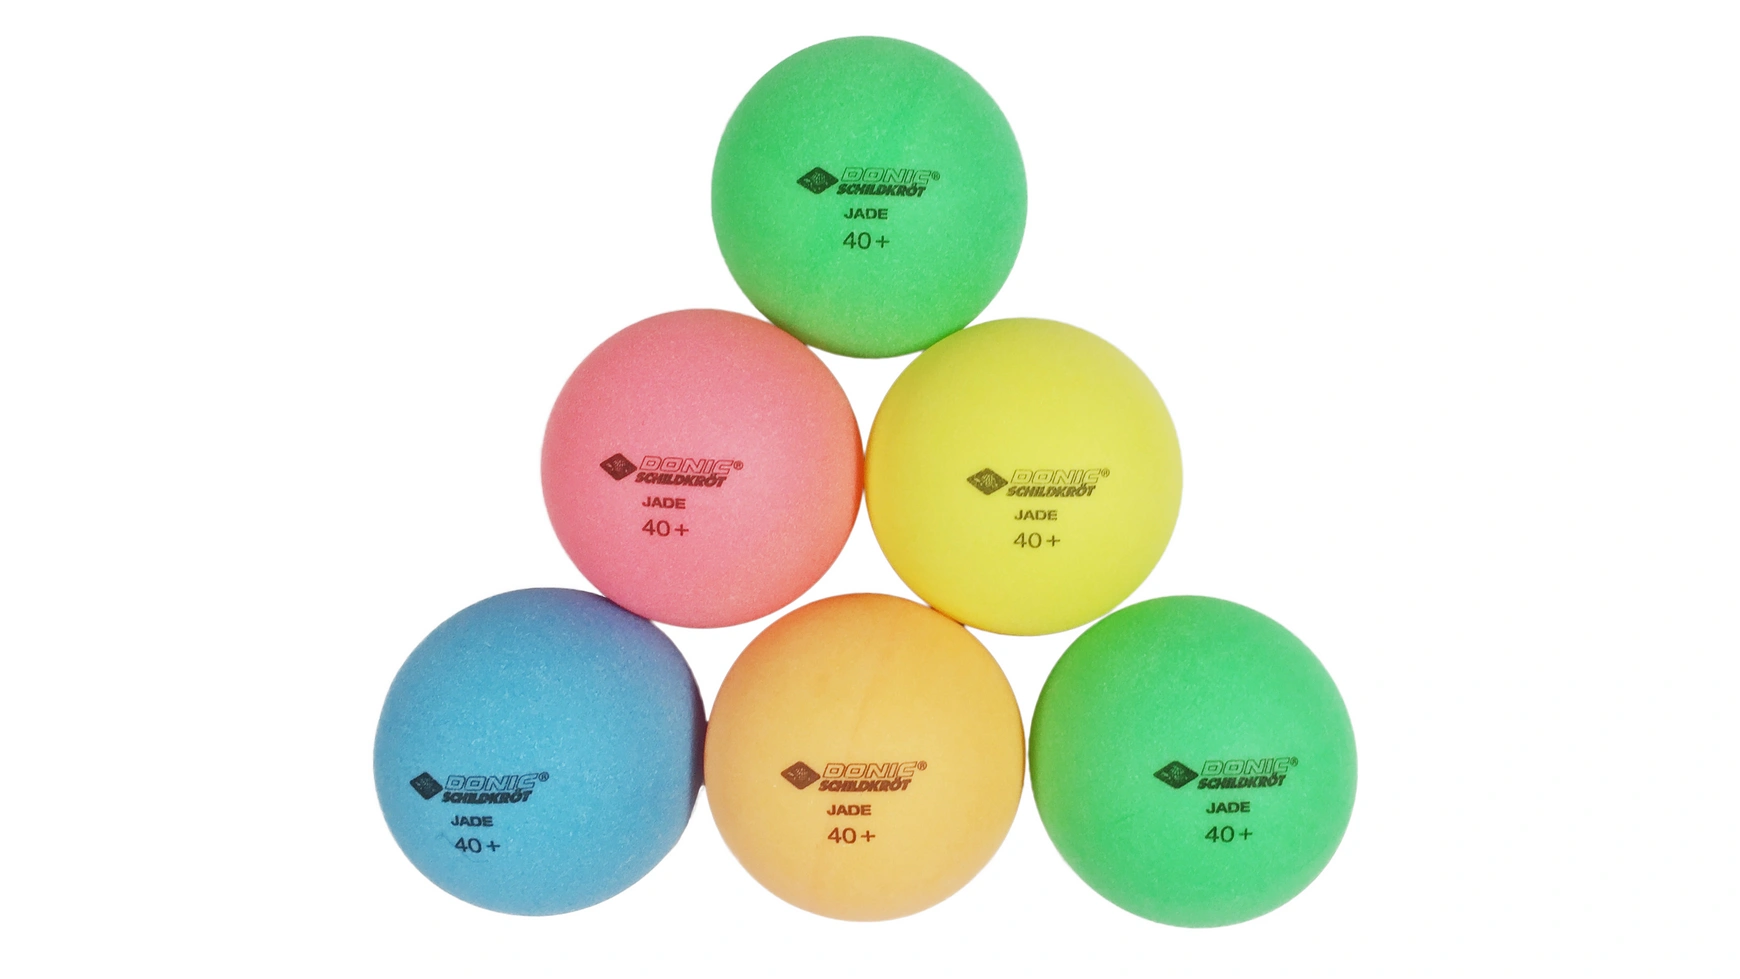 Donic Schildkröt Мяч для настольного тенниса Color Popps, 6 цветных шариков качества Poly 40+ мячи для настольного тенниса 10 шт 40 звезд abs пластик мячи для пинг понга тренировочные мячи для настольного тенниса